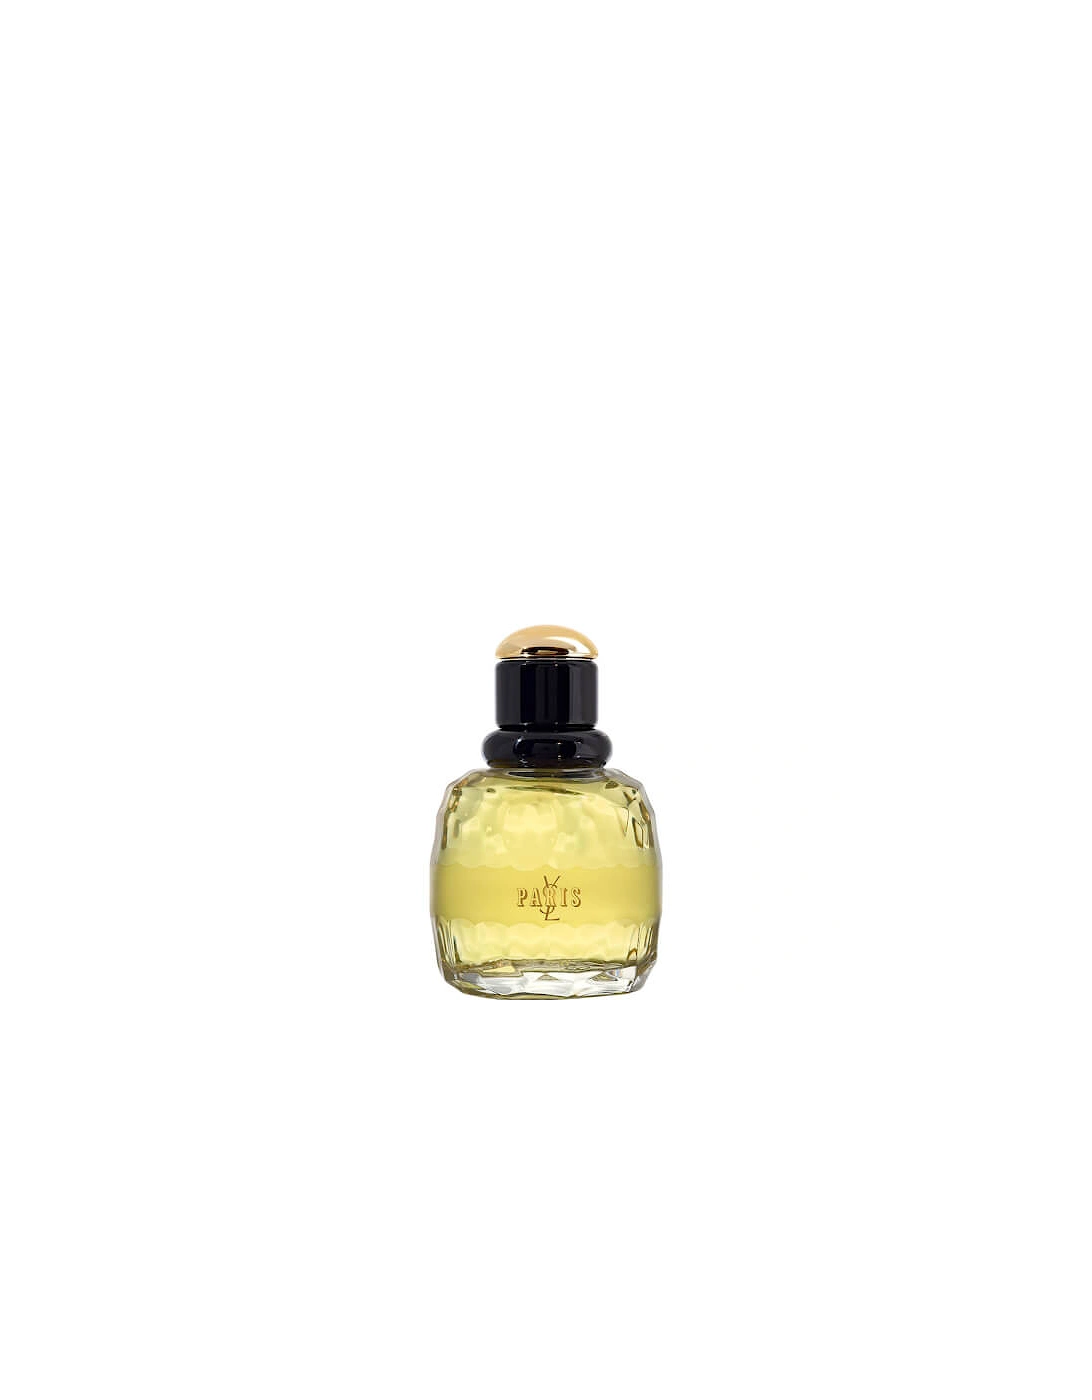 Yves Saint Laurent Paris Eau de Parfum 50ml, 2 of 1